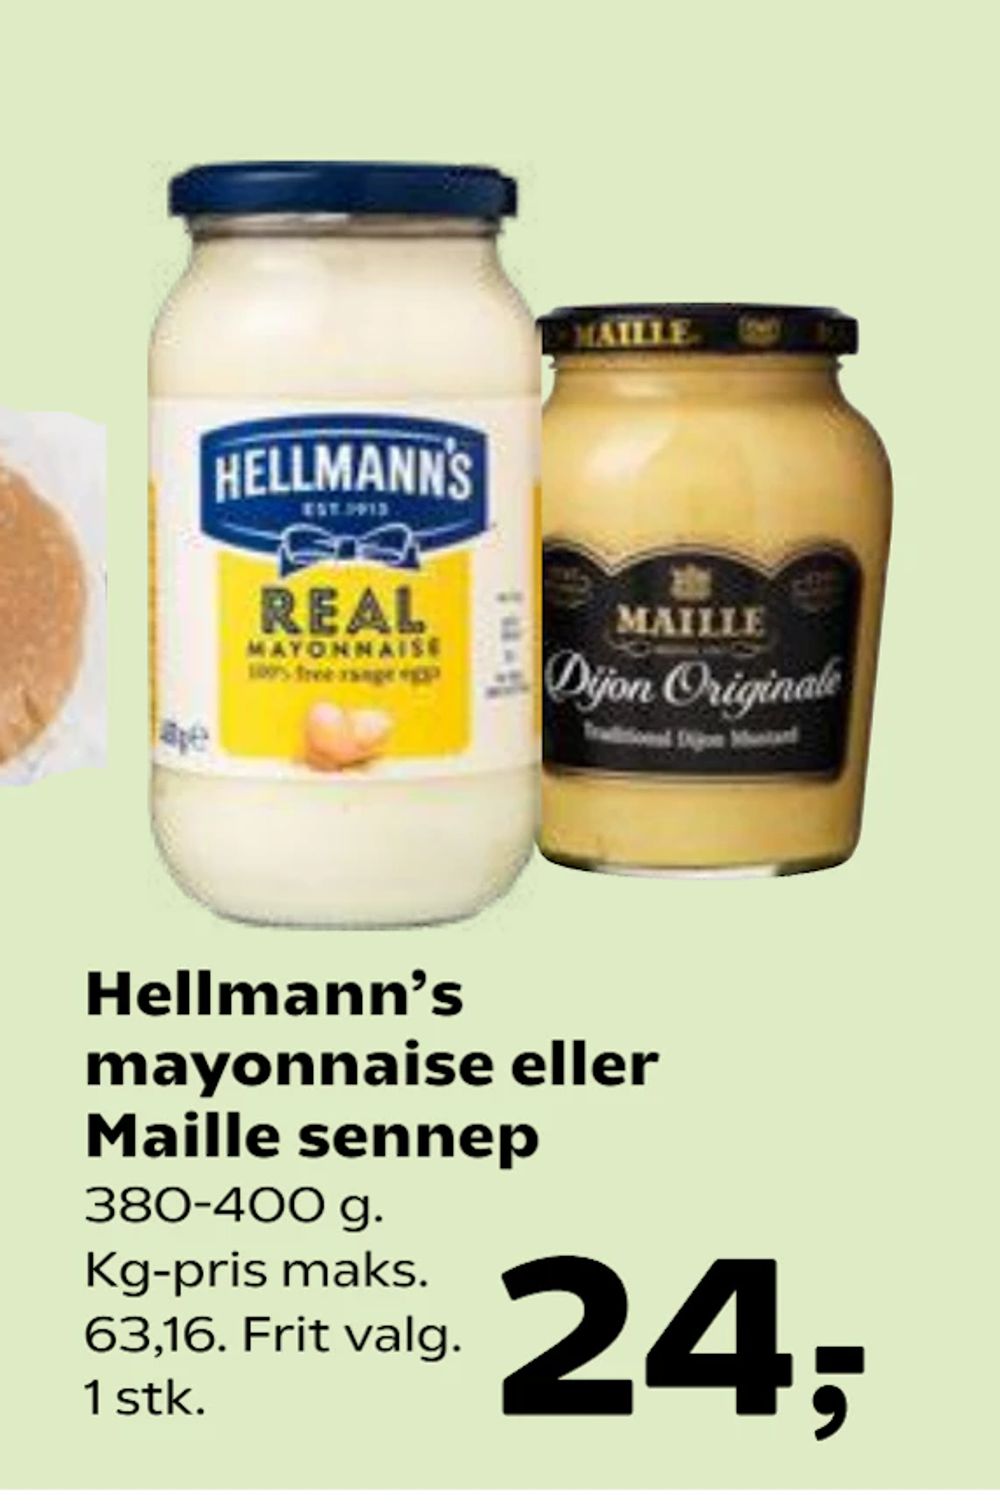 Tilbud på Hellmann’s mayonnaise eller Maille sennep fra SuperBrugsen til 24 kr.